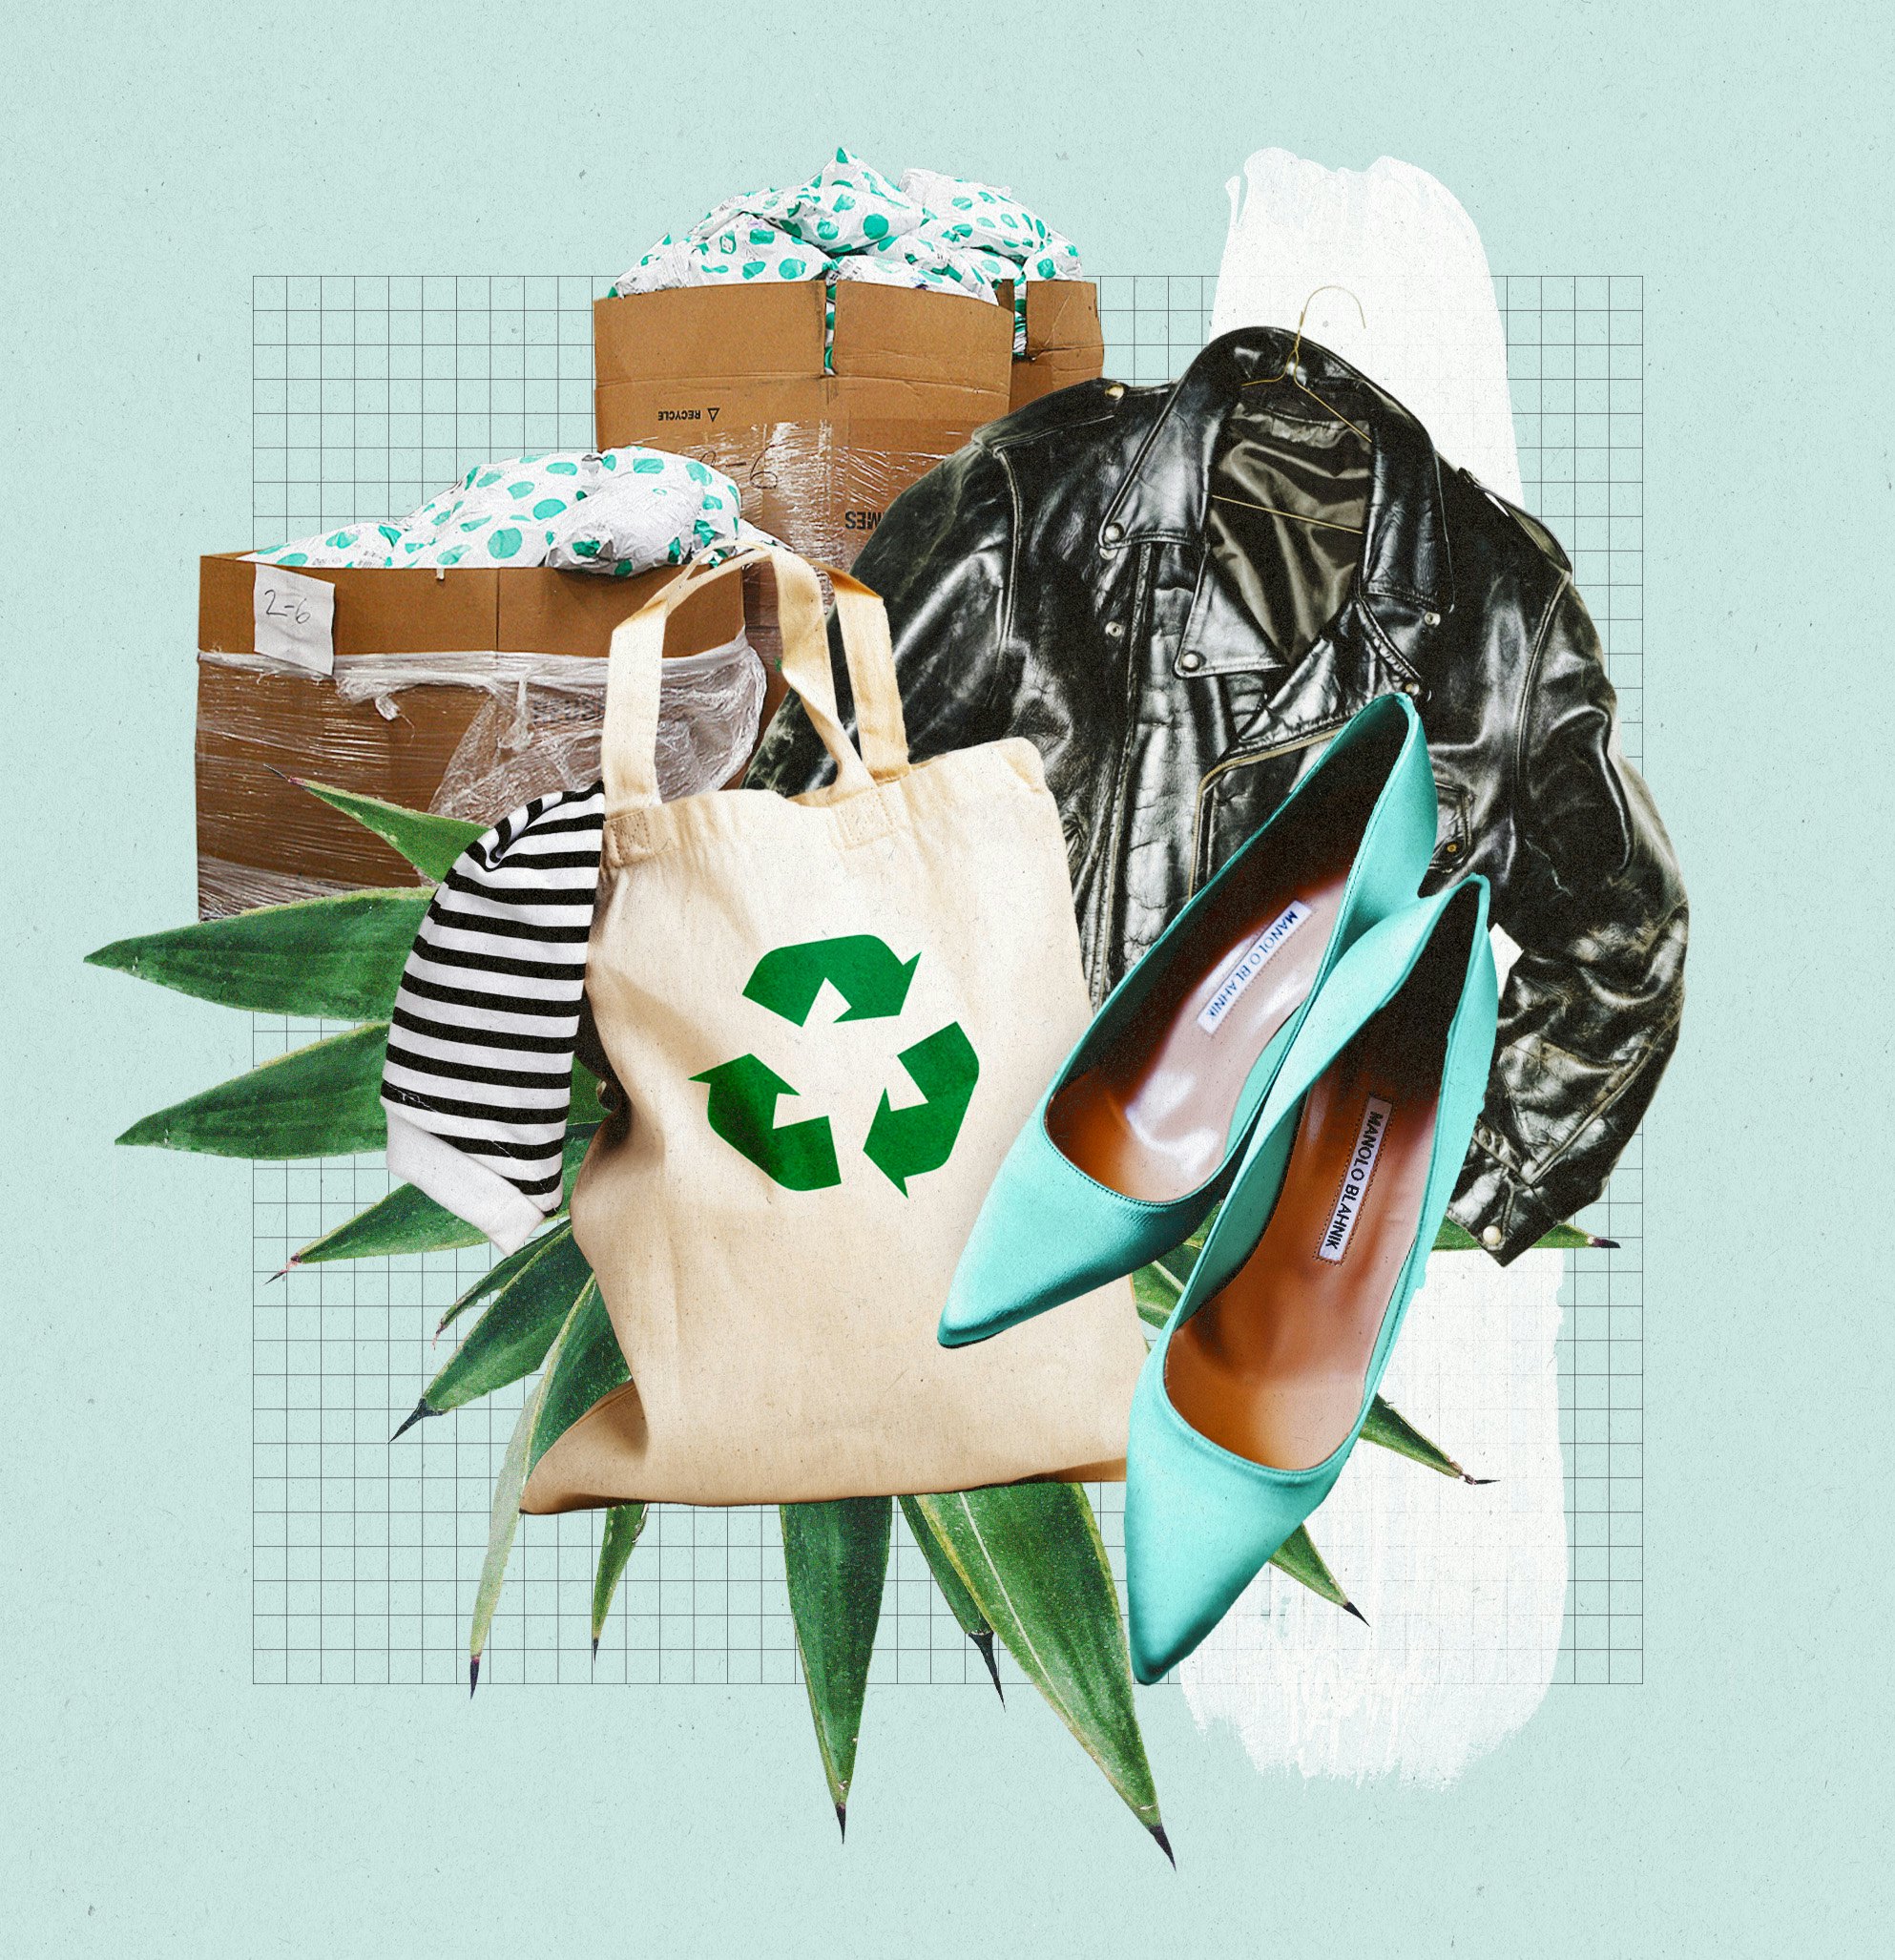 Shop the Take Back Bag | Cleobella